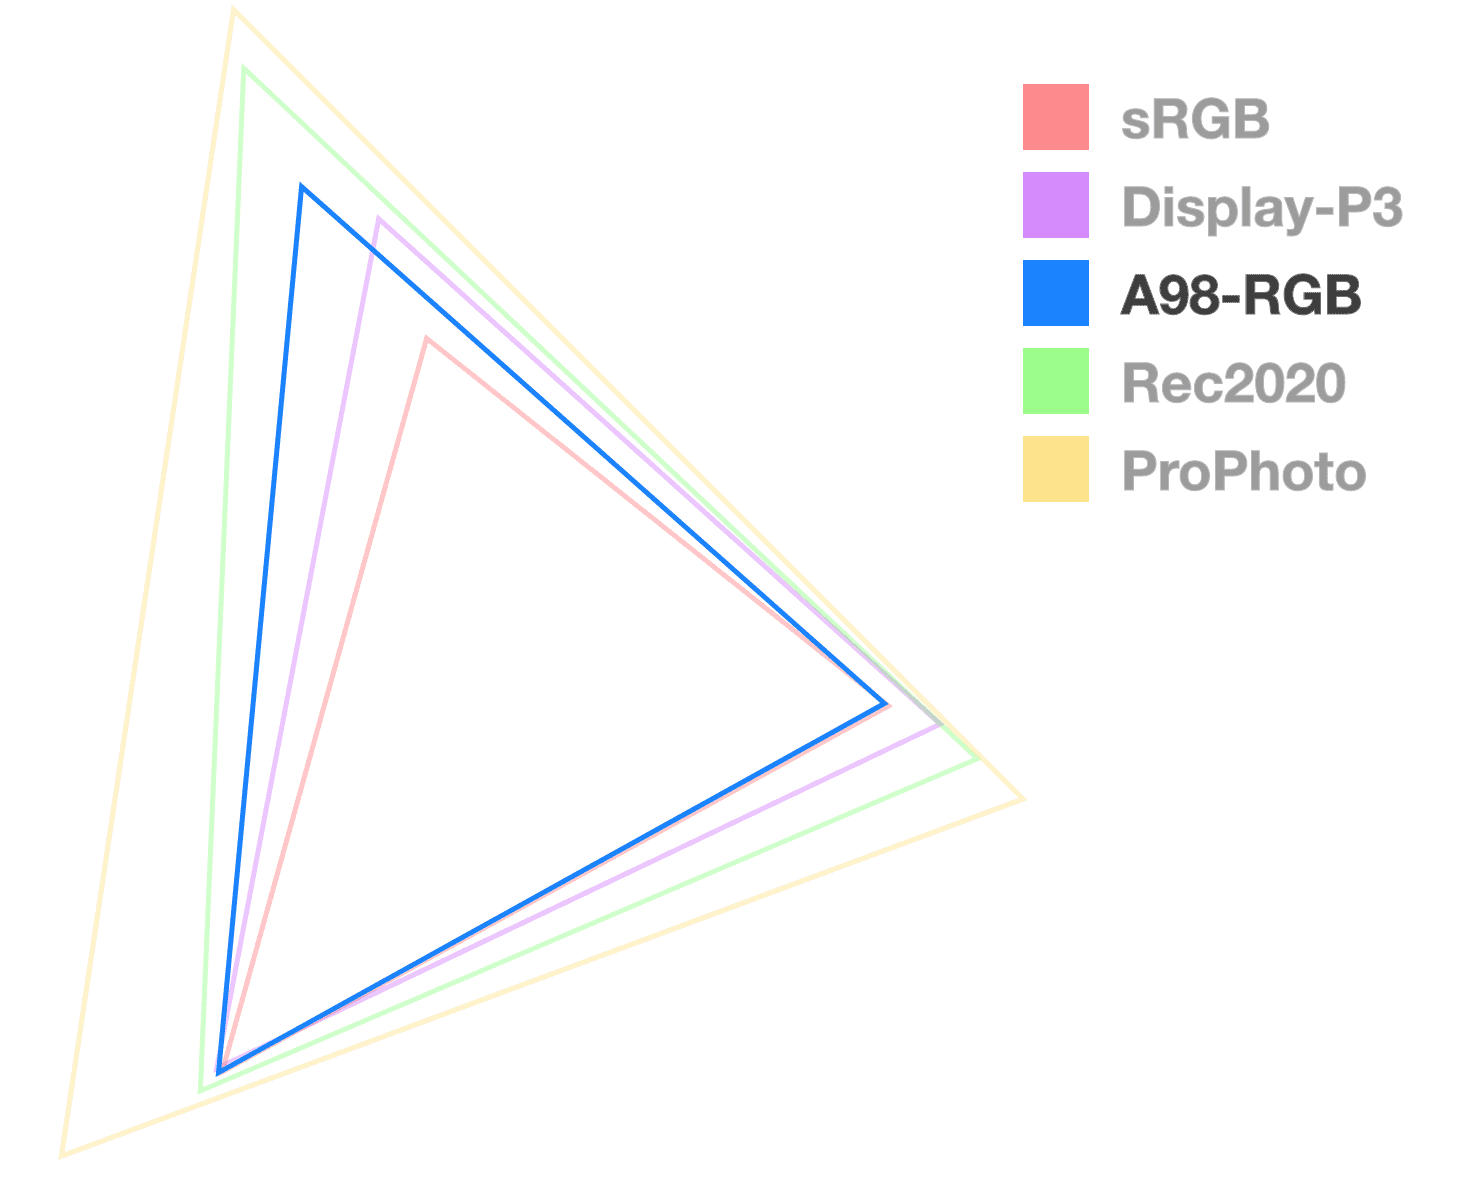 A98 の三角形は、色域のサイズを可視化するため、完全に不透明な唯一の三角形です。中間サイズの三角形のようになります。